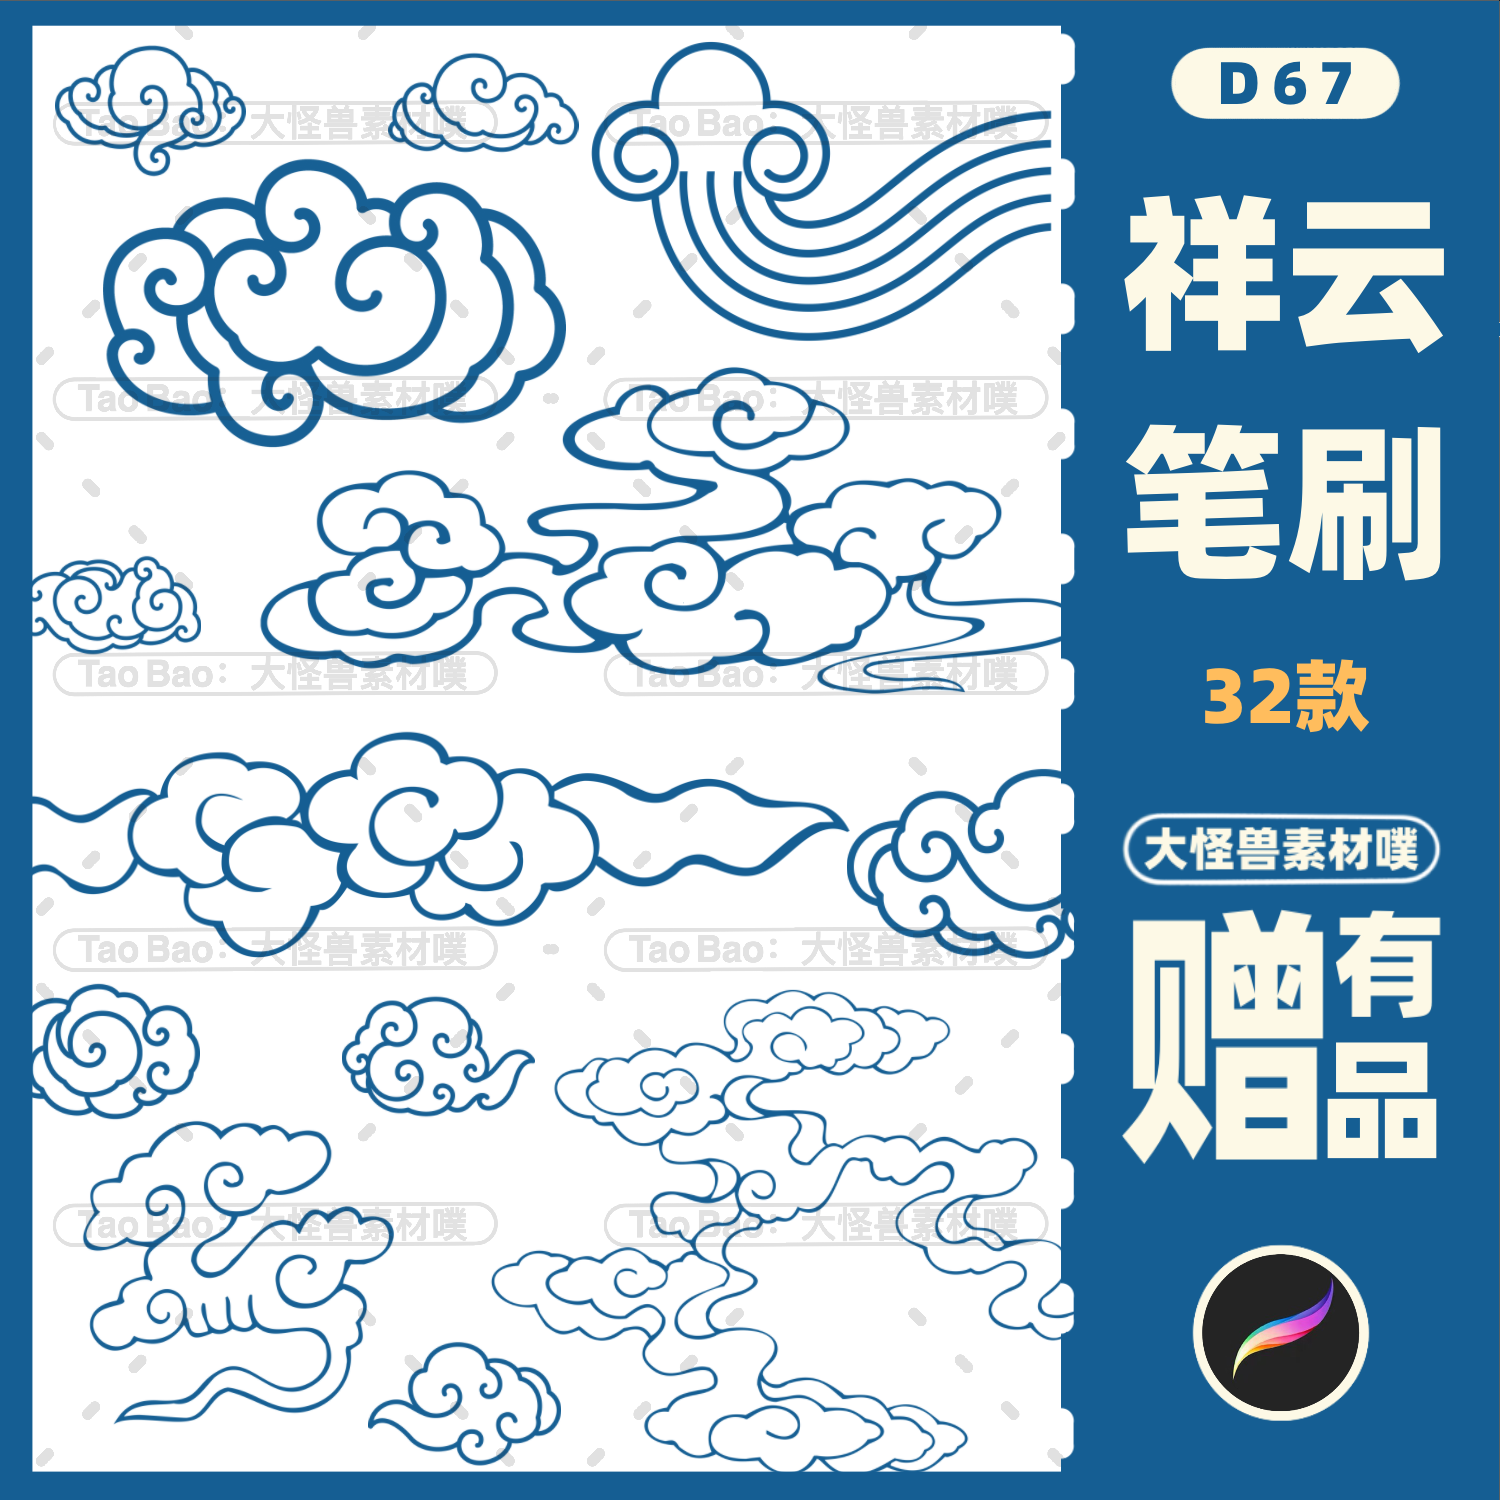 中国风祥云纹设计素材古典手绘插画 procreate笔刷云朵国画笔刷